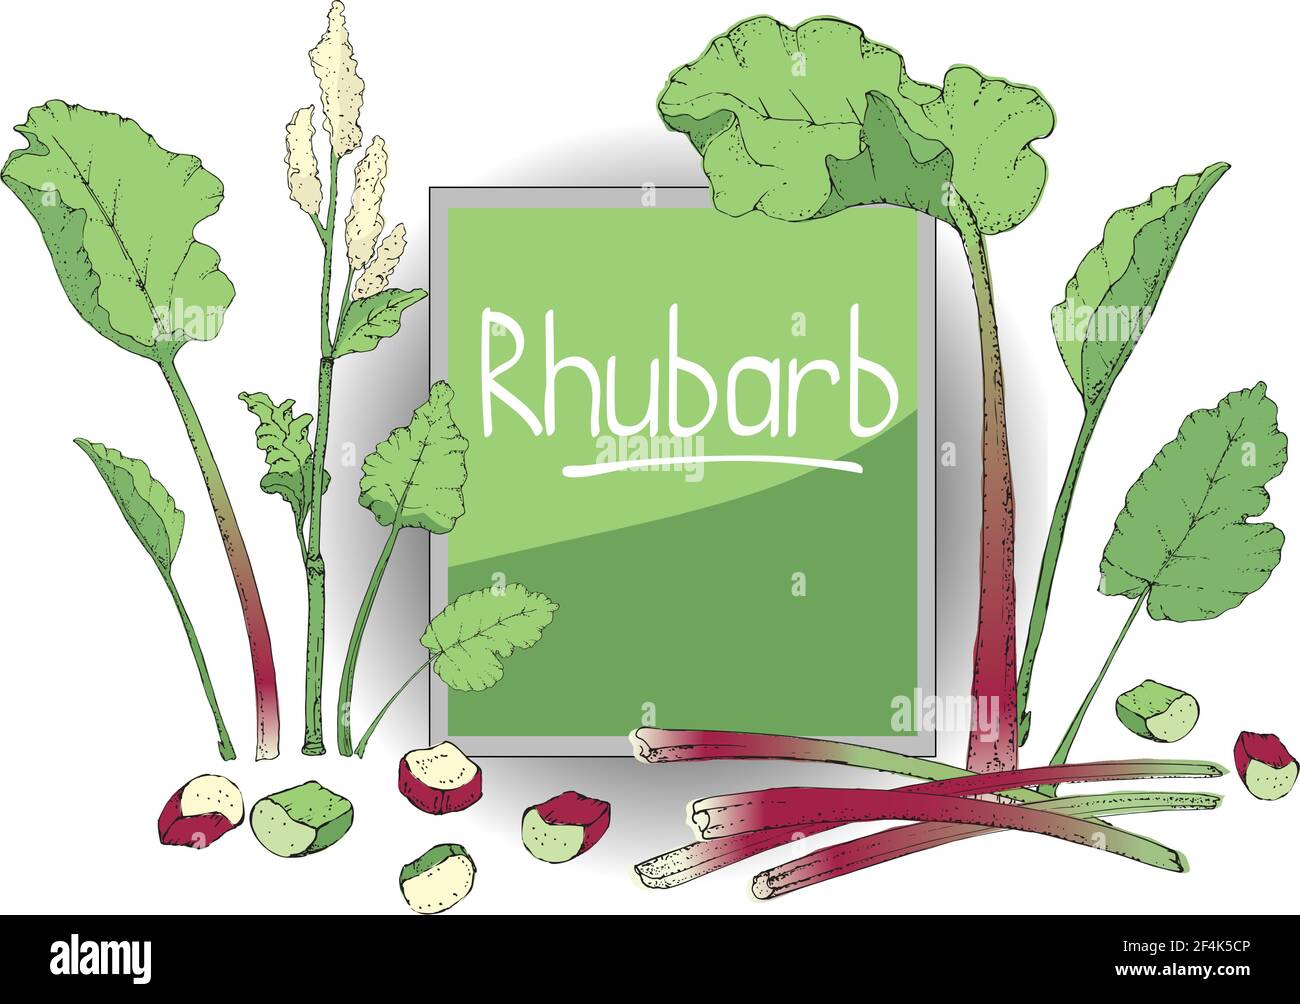 Gemüsevektor-Set mit Rhabarber. Frische Piepflanze mit grünen Blättern, grünen und roten Stielen, weißen und hellgelben Blüten, ganz und in Stücke geschnitten. Stock Vektor